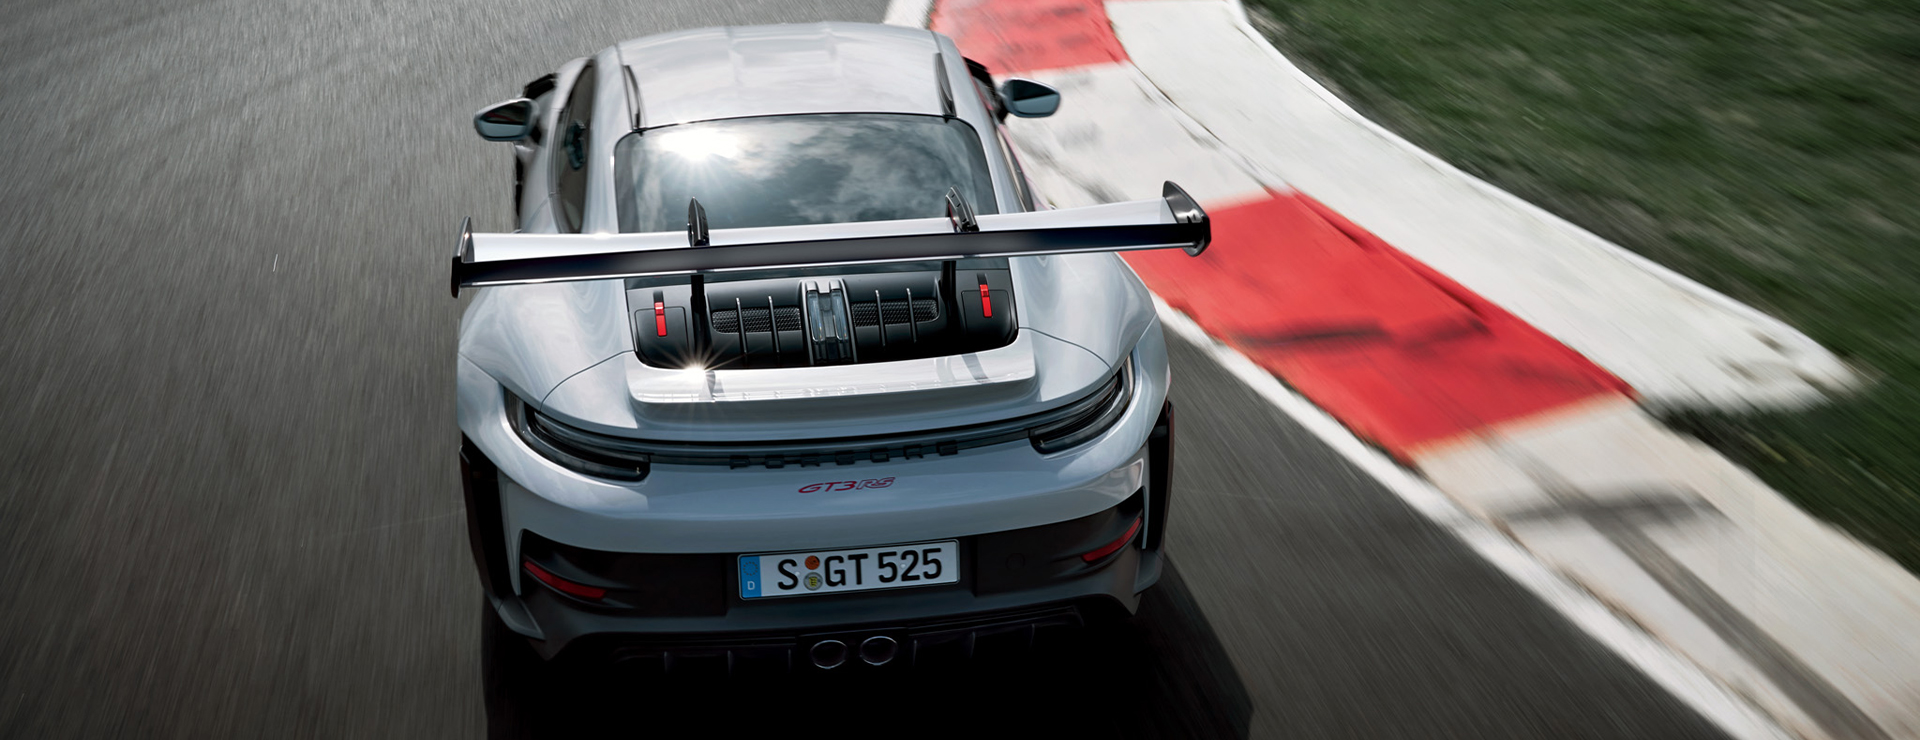 Ein Porsche Rennwagen fährt schnell auf einer Rennstrecke.